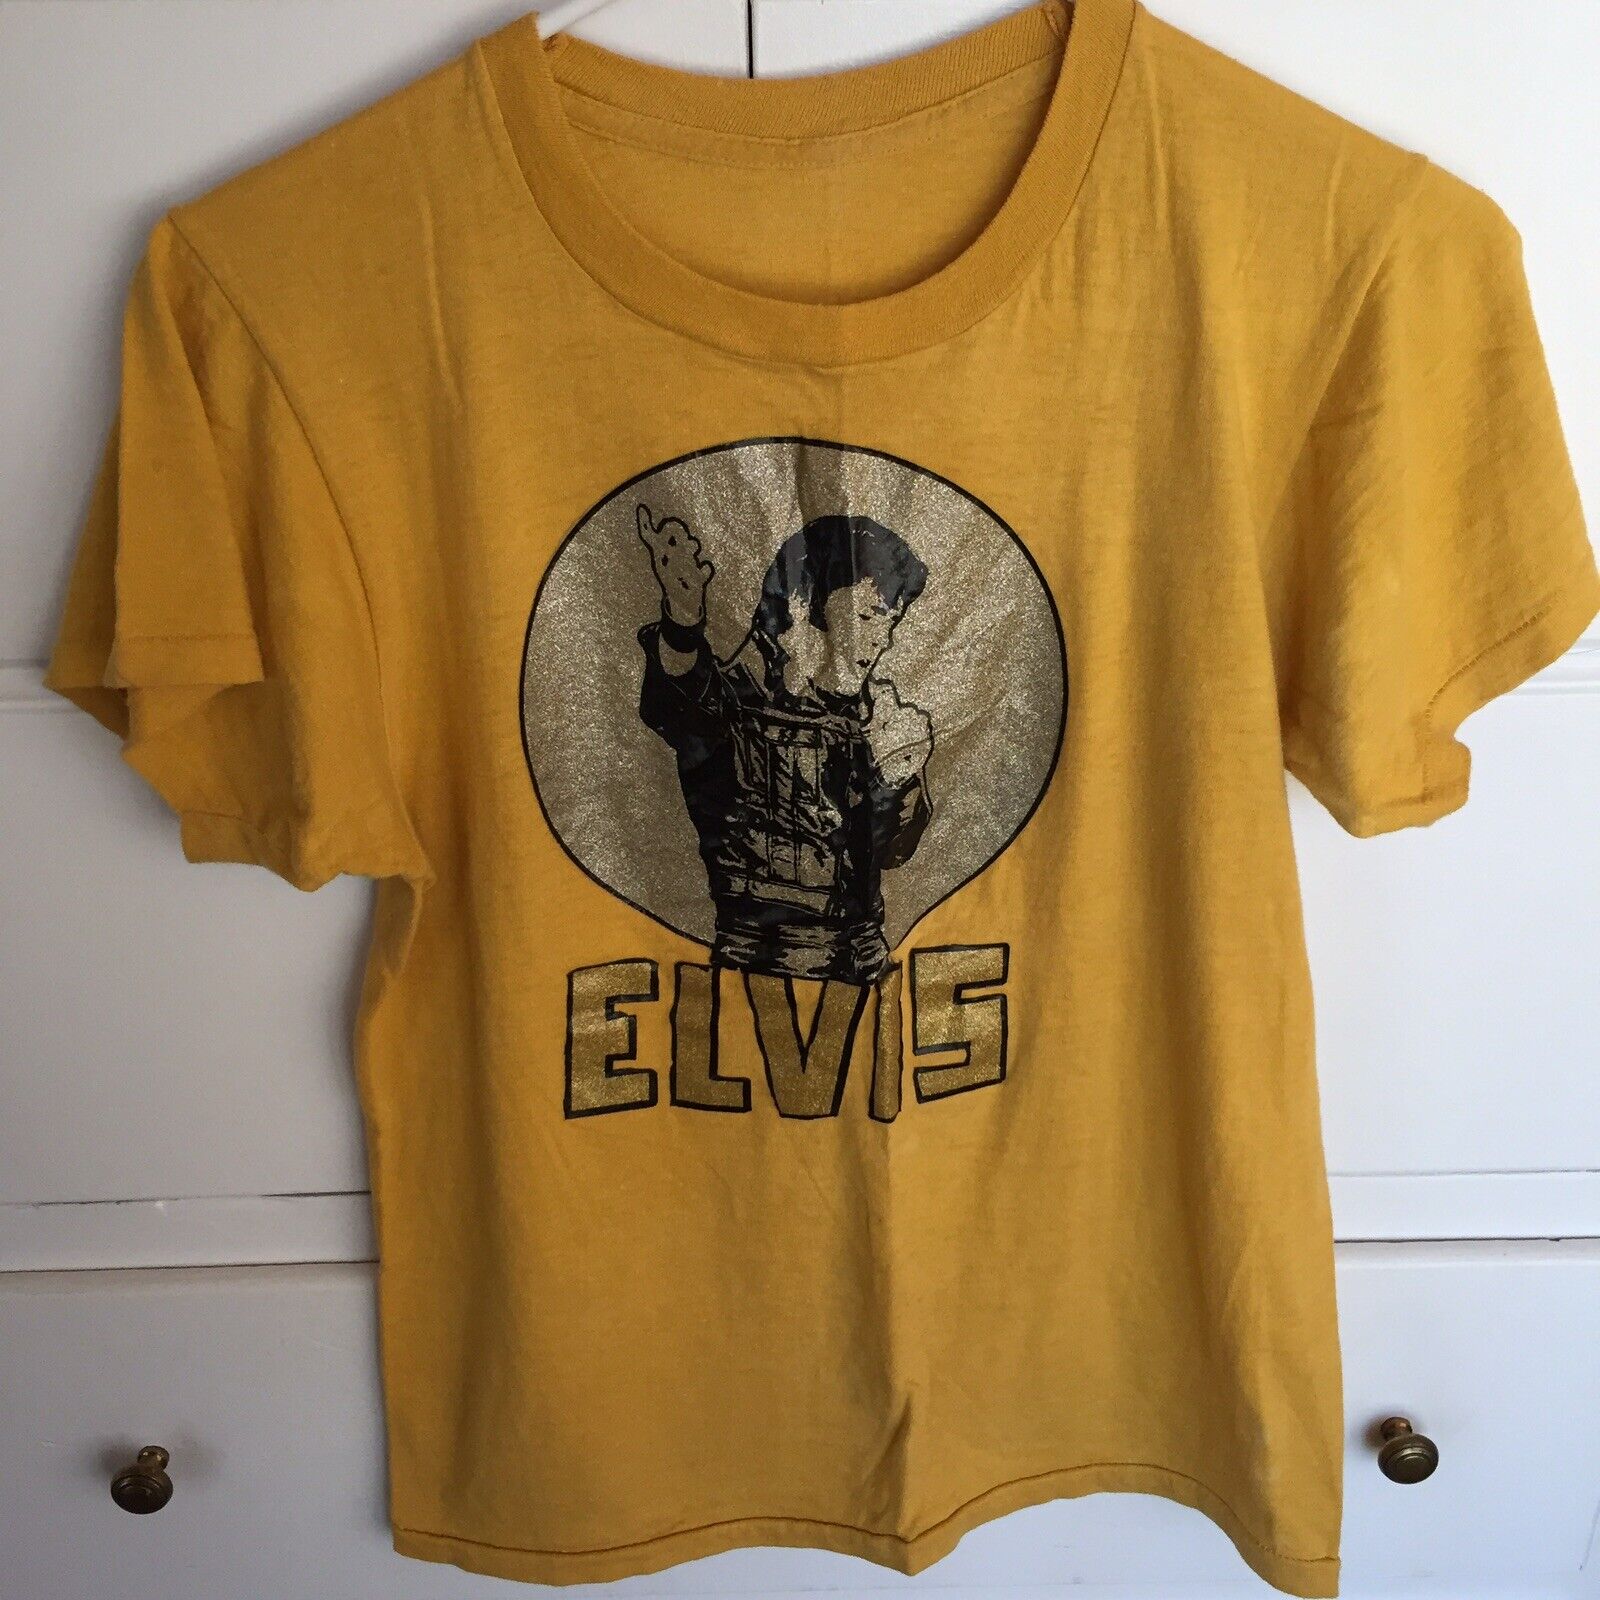 Vintage Elvis Presley 1968 Comeback Special Gold Foil Single Stitch T-shirt